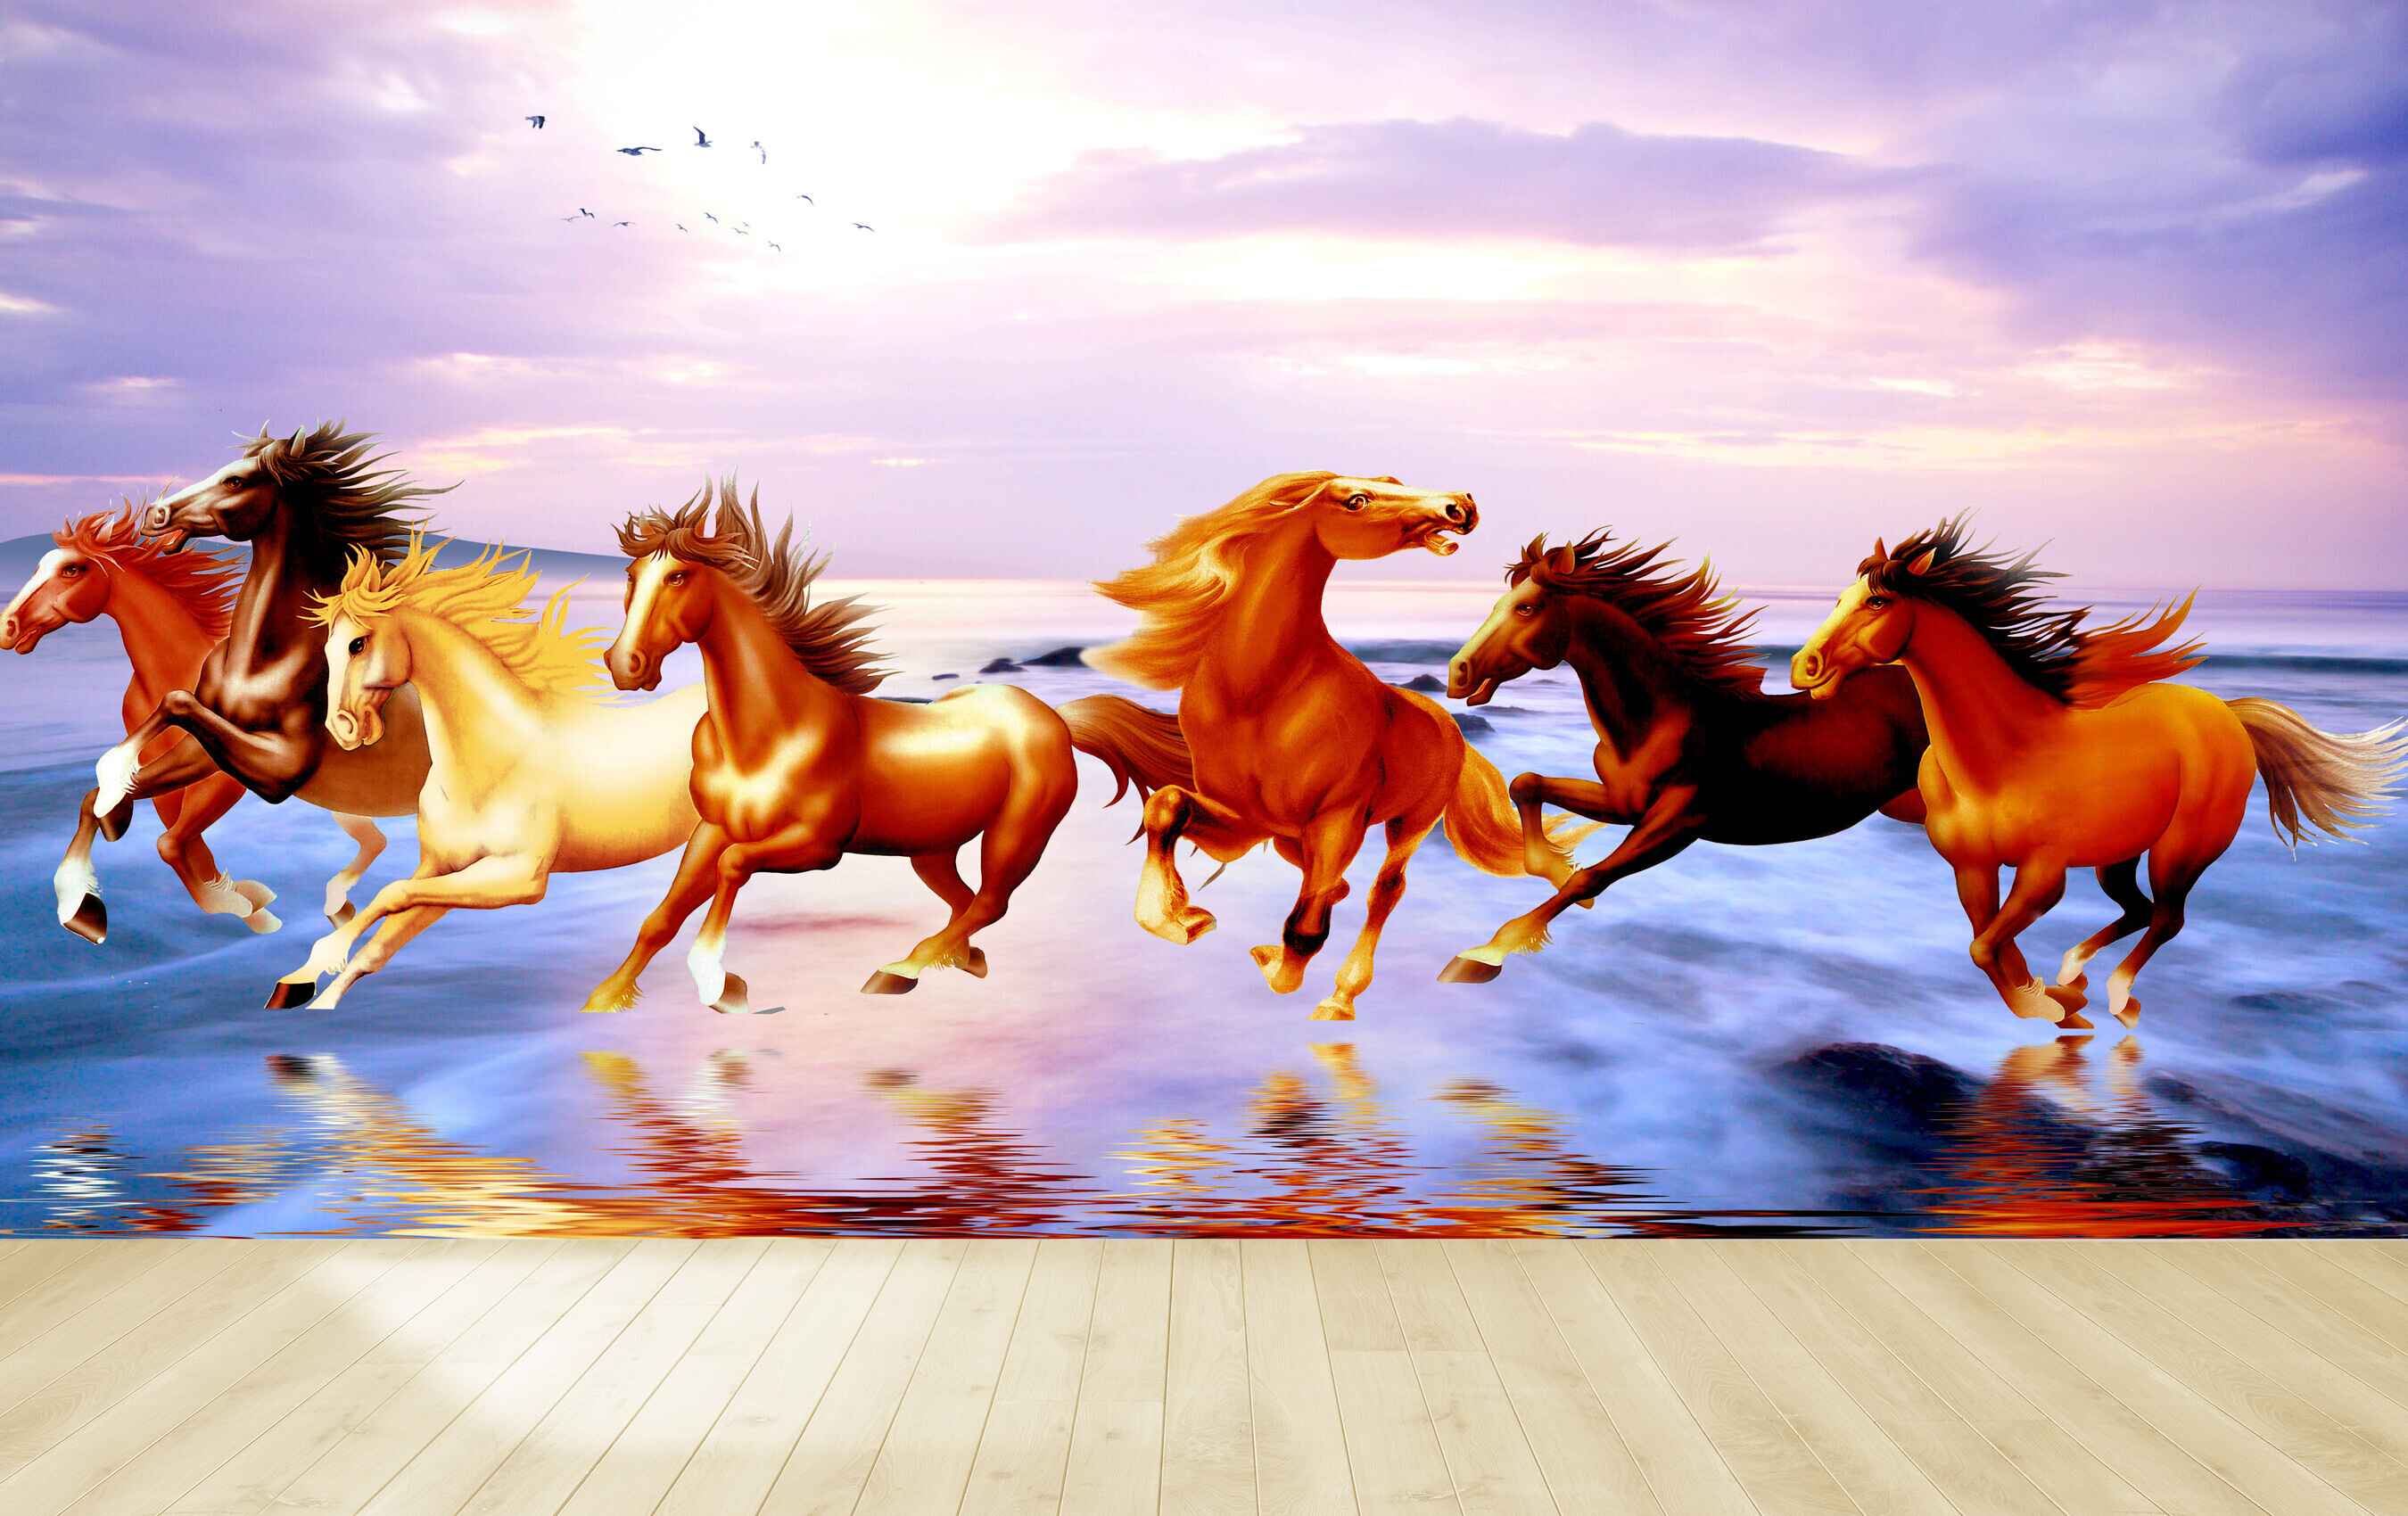 Cảm giác khi ngắm nhìn những chú ngựa lao về phía đích, đua tốc độ và đánh bại đối thủ là vô cùng hồi hộp. Nếu bạn là một người yêu thích đua ngựa, hãy đến xem hình ảnh và cảm nhận sự nhanh nhẹn và phóng khoáng của những chú ngựa trên đường đua.